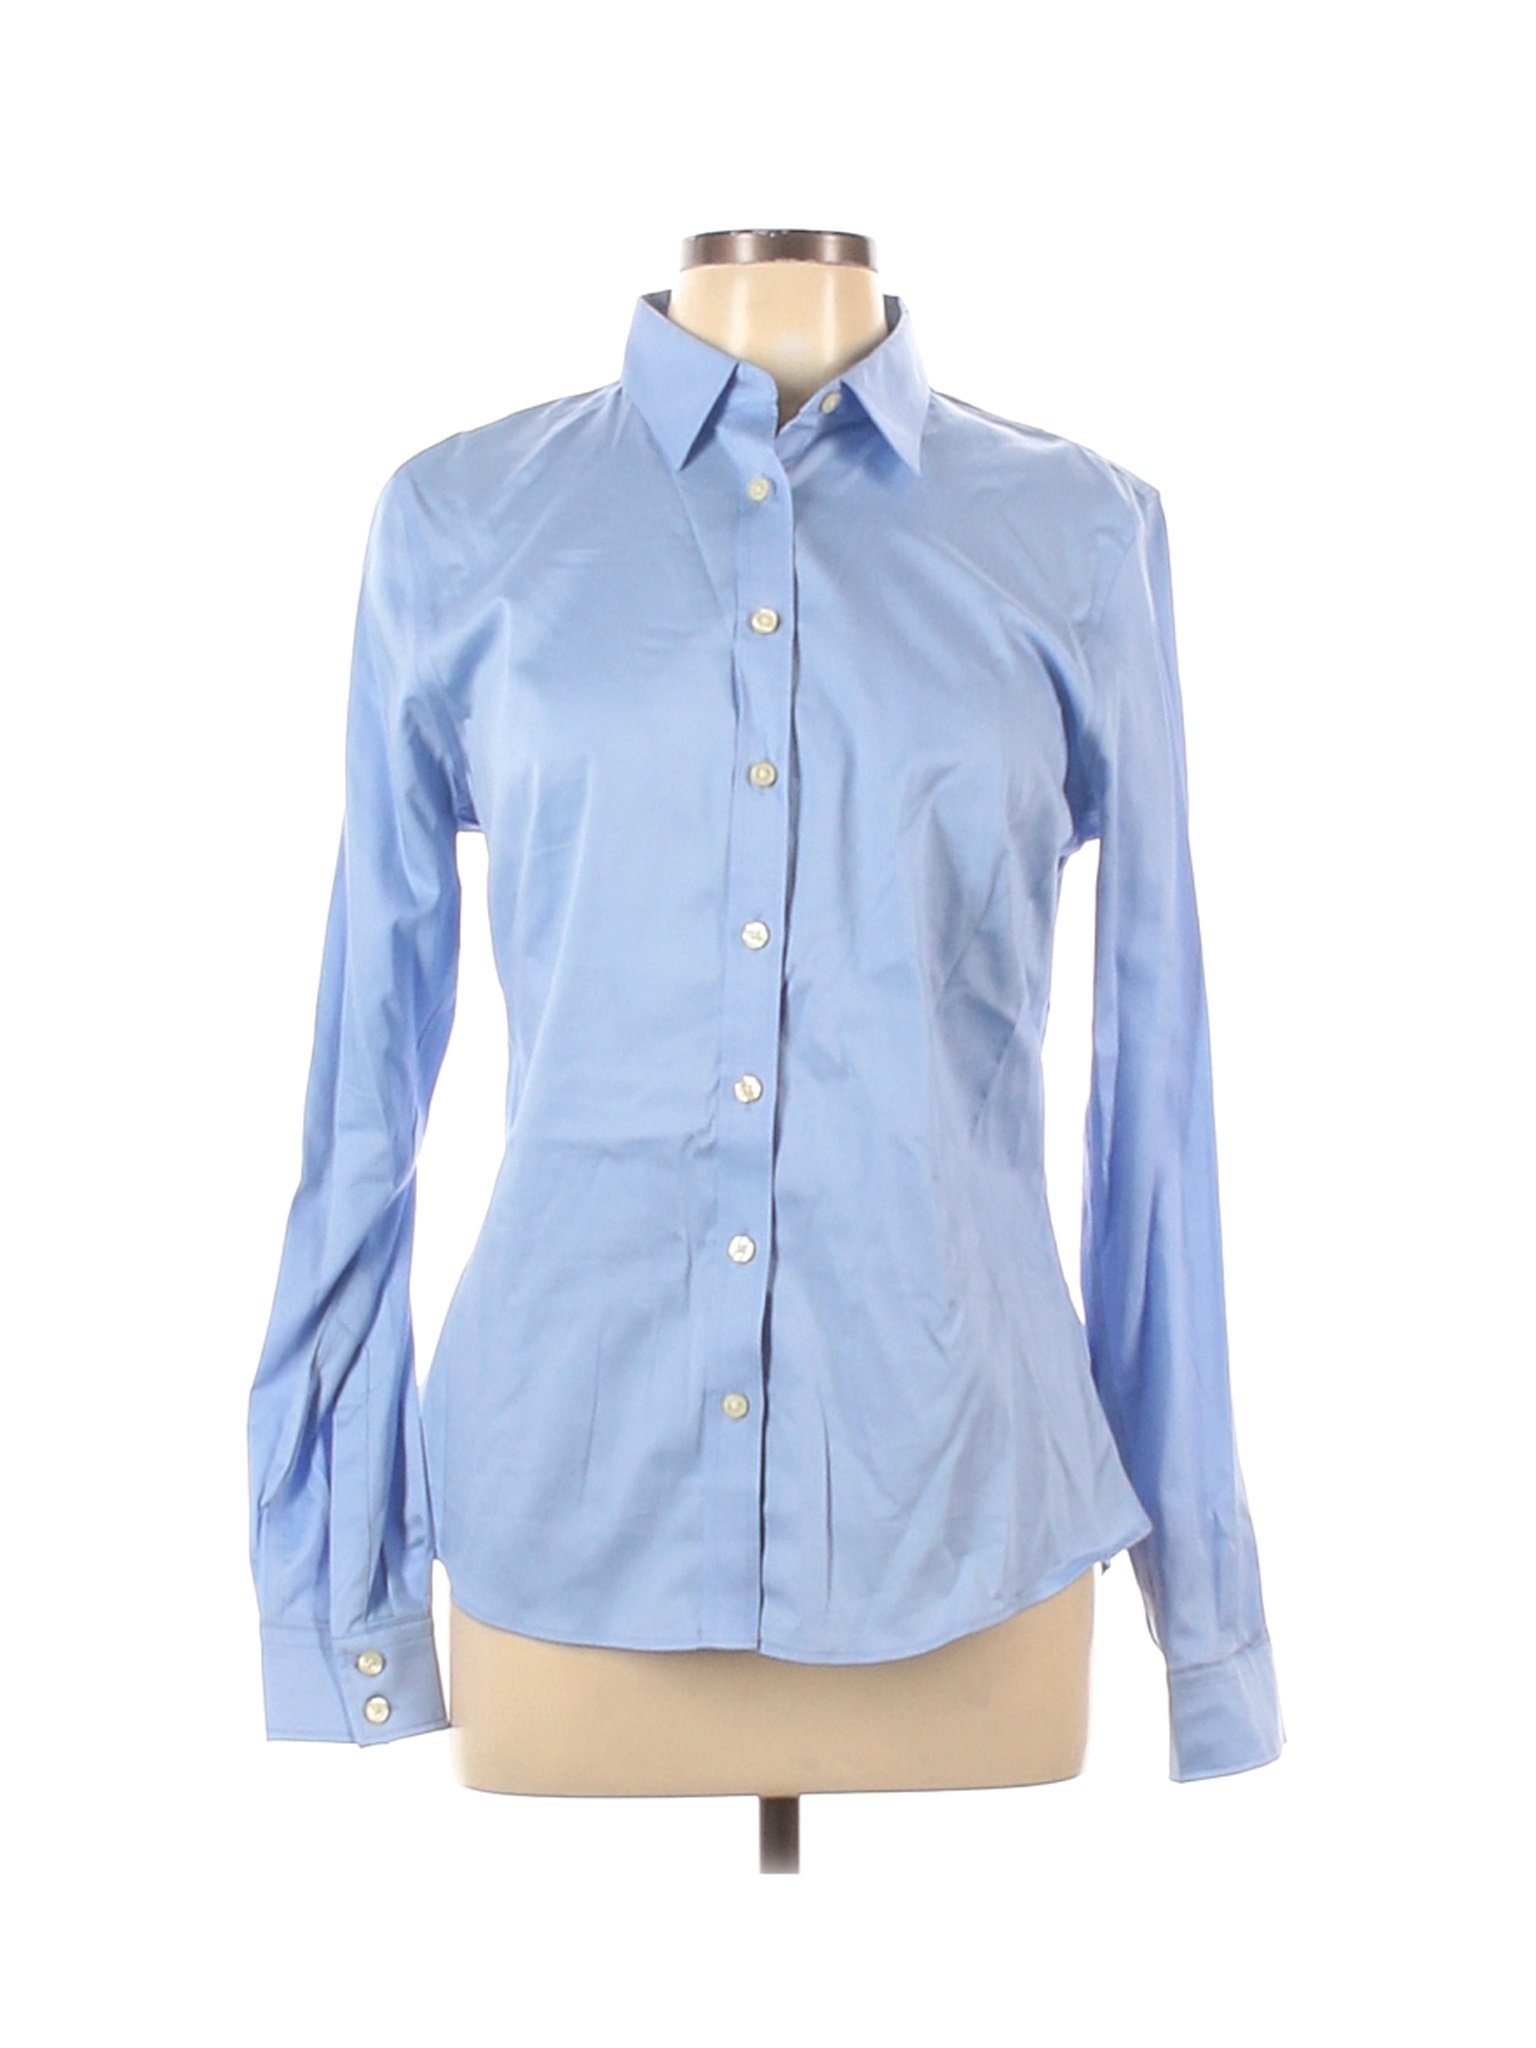 Banana Republic Women Blue Long Sleeve Button-Down Shirt 12 | eBay